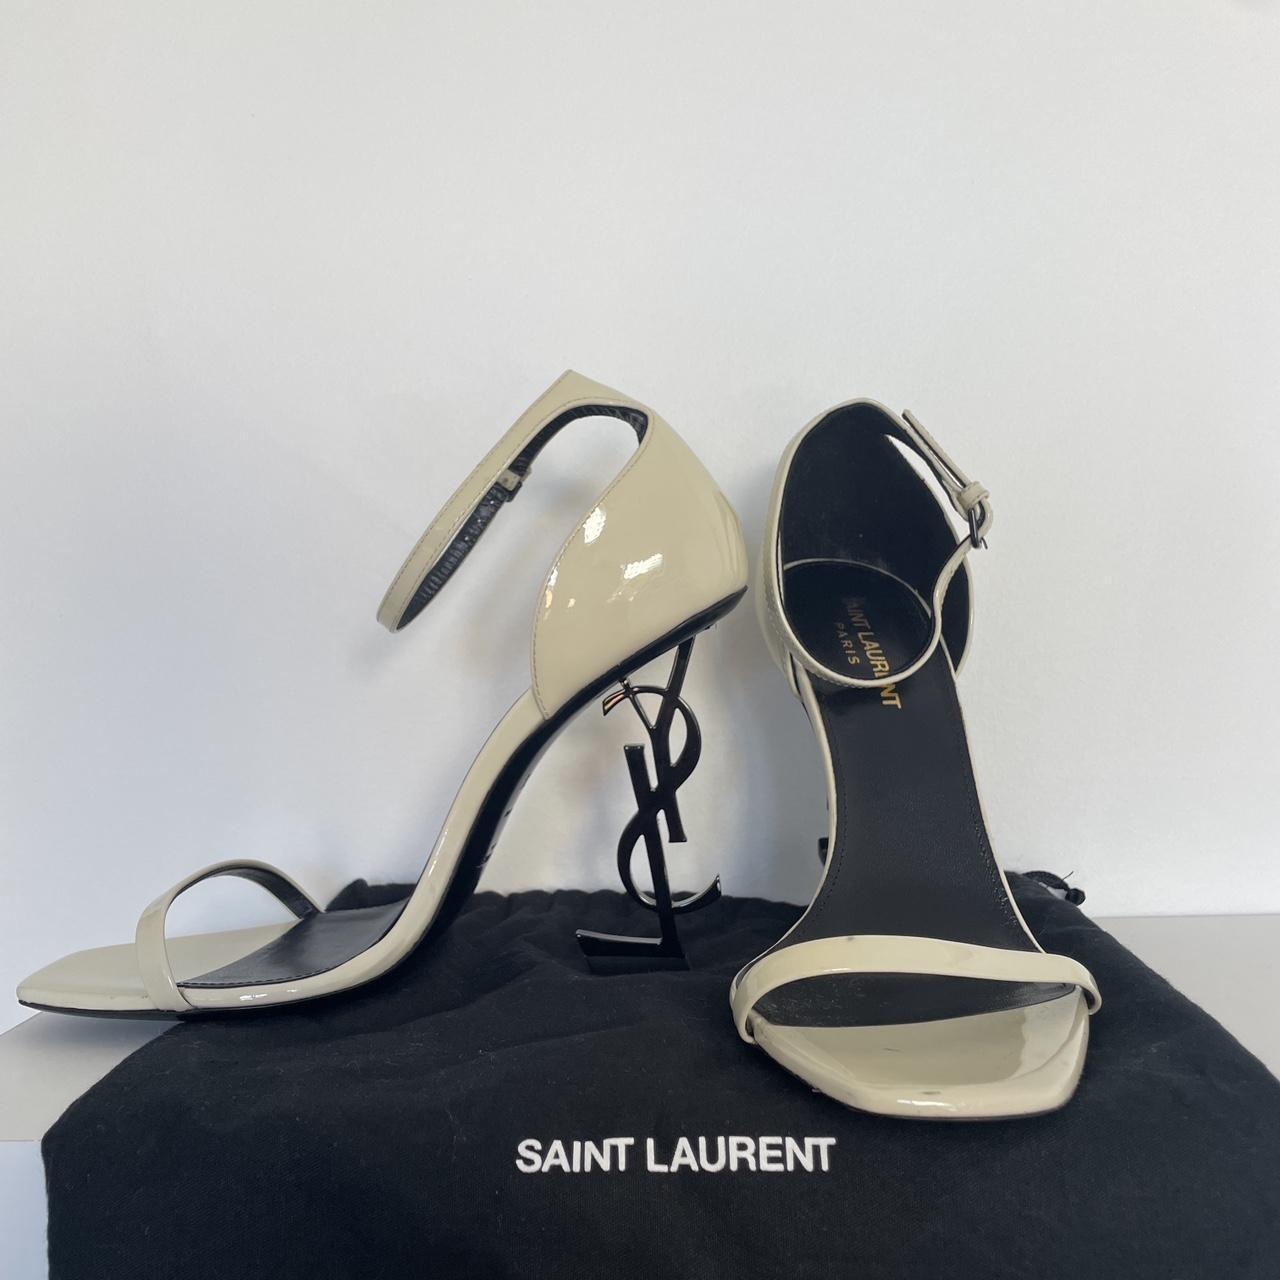 Saint Laurent Paris YSL Black leather - Depop